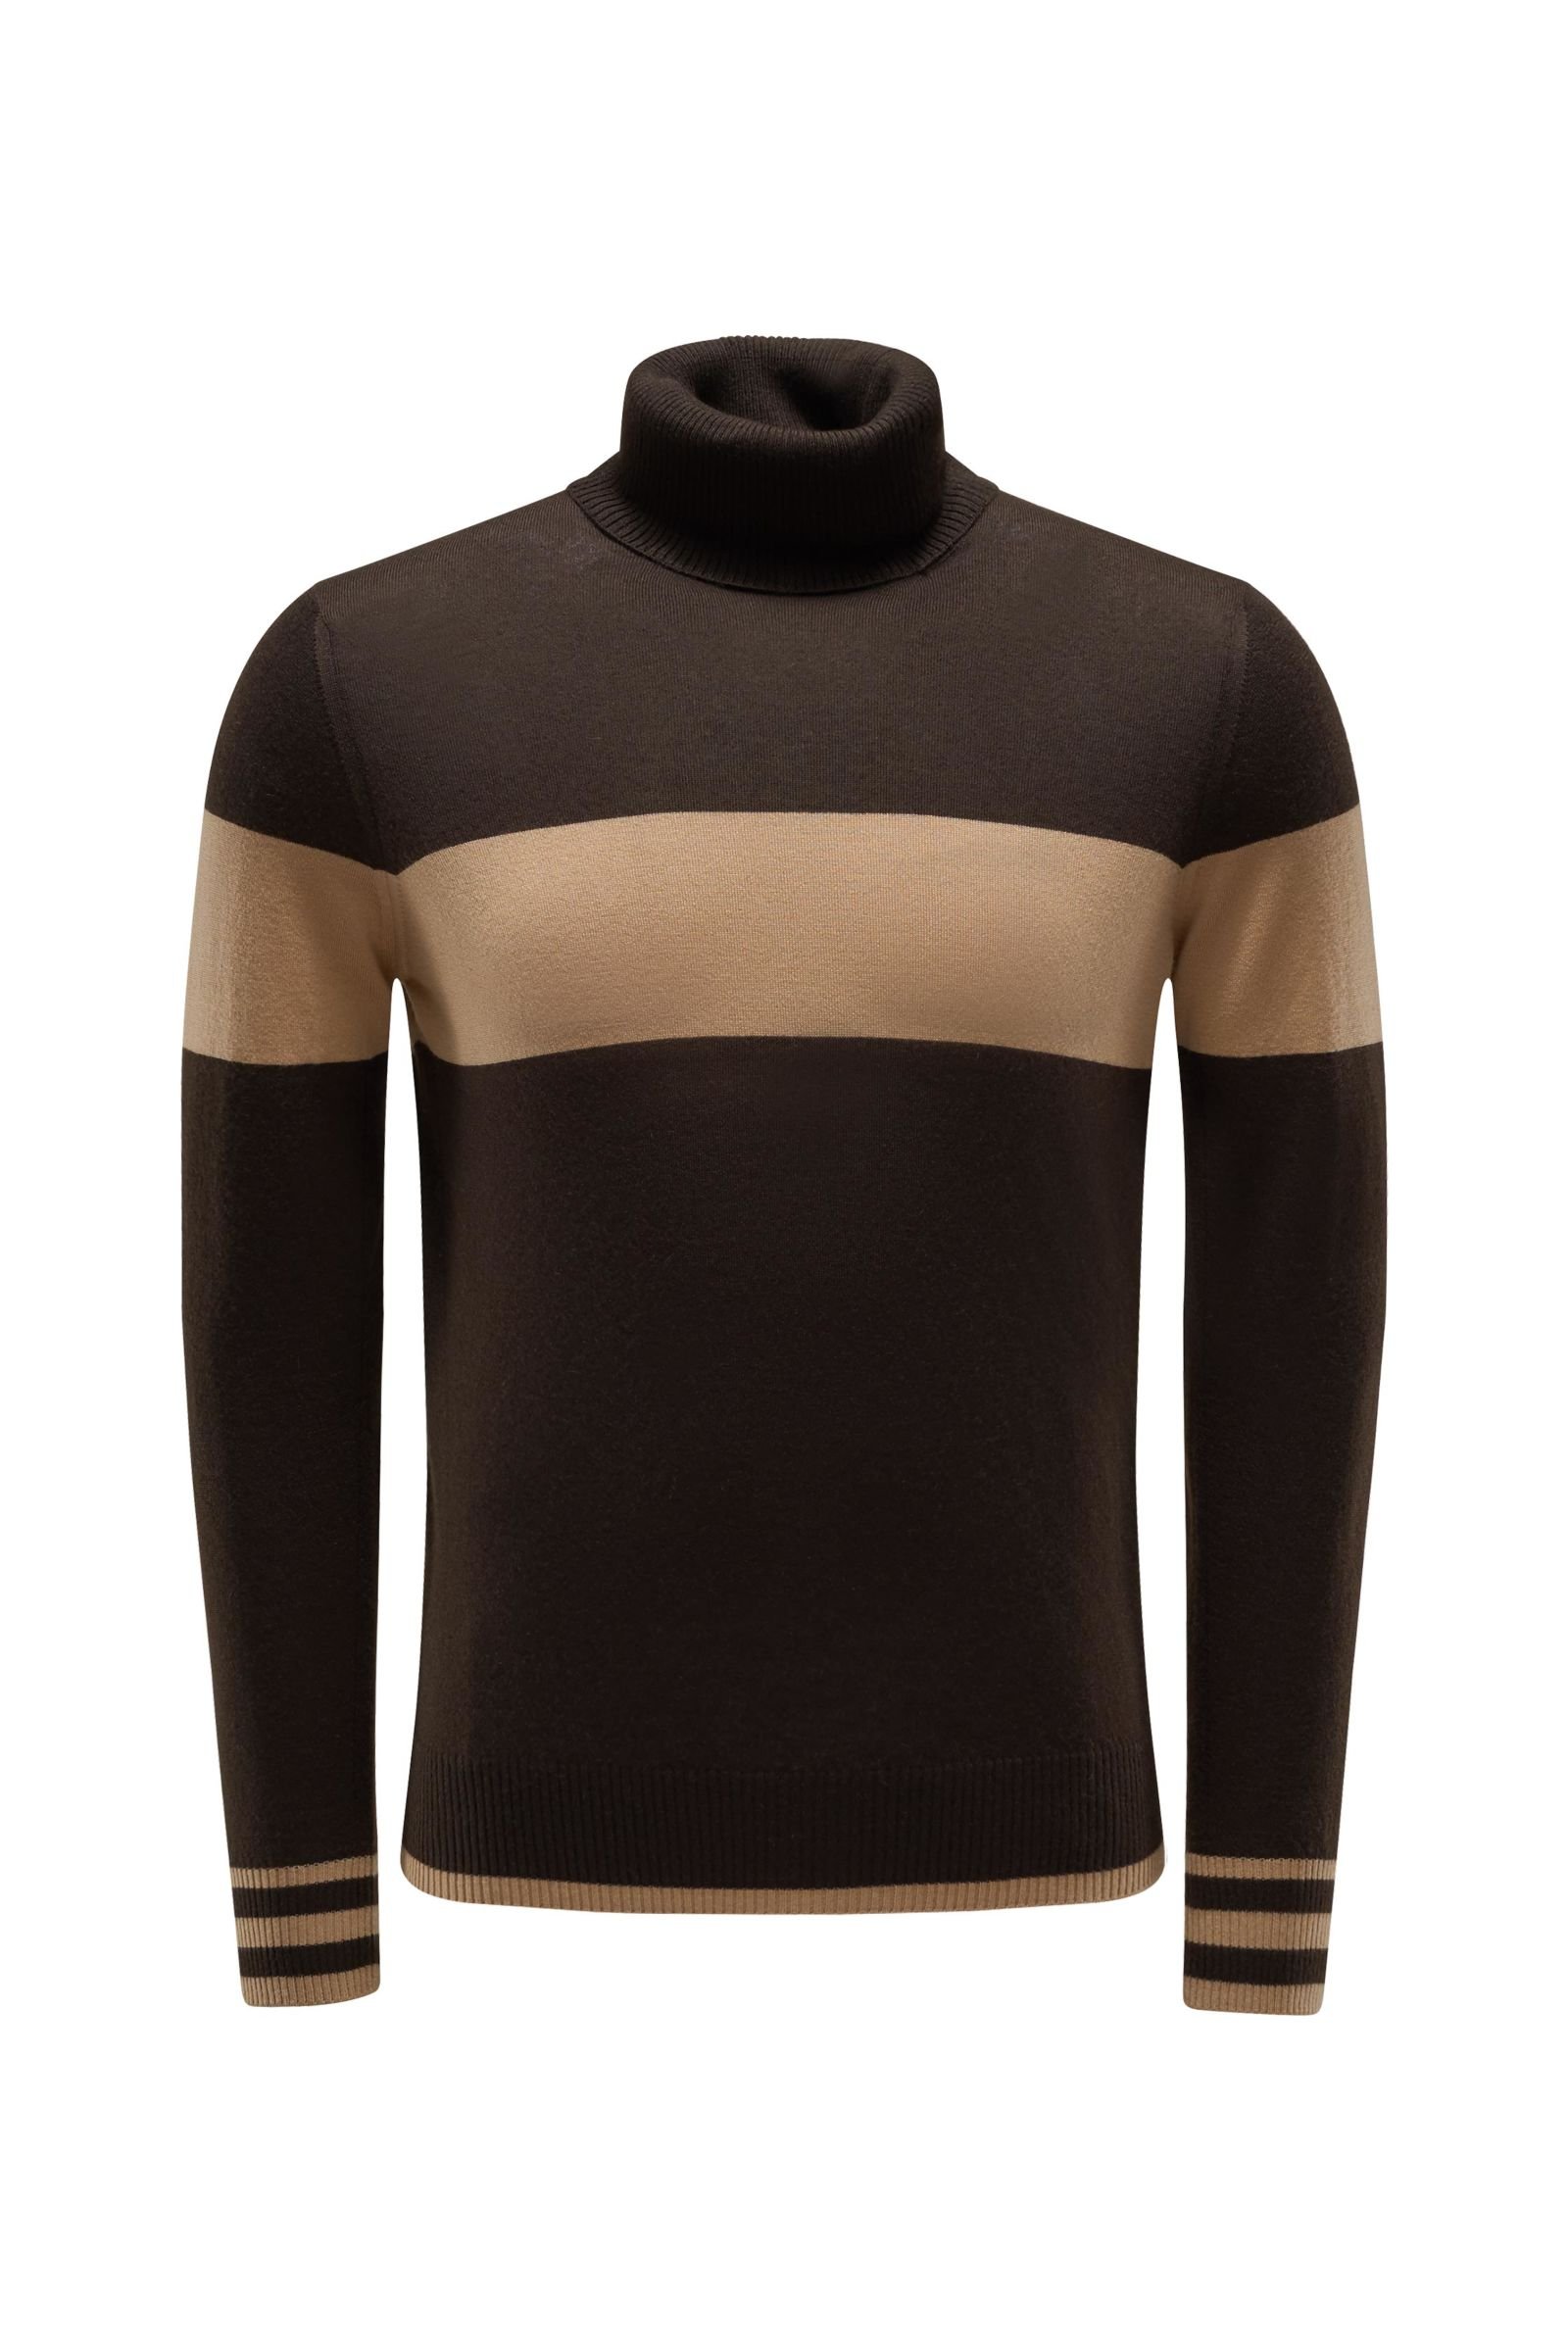 Cashmere turtleneck jumper 'No.10' dark brown/light brown striped